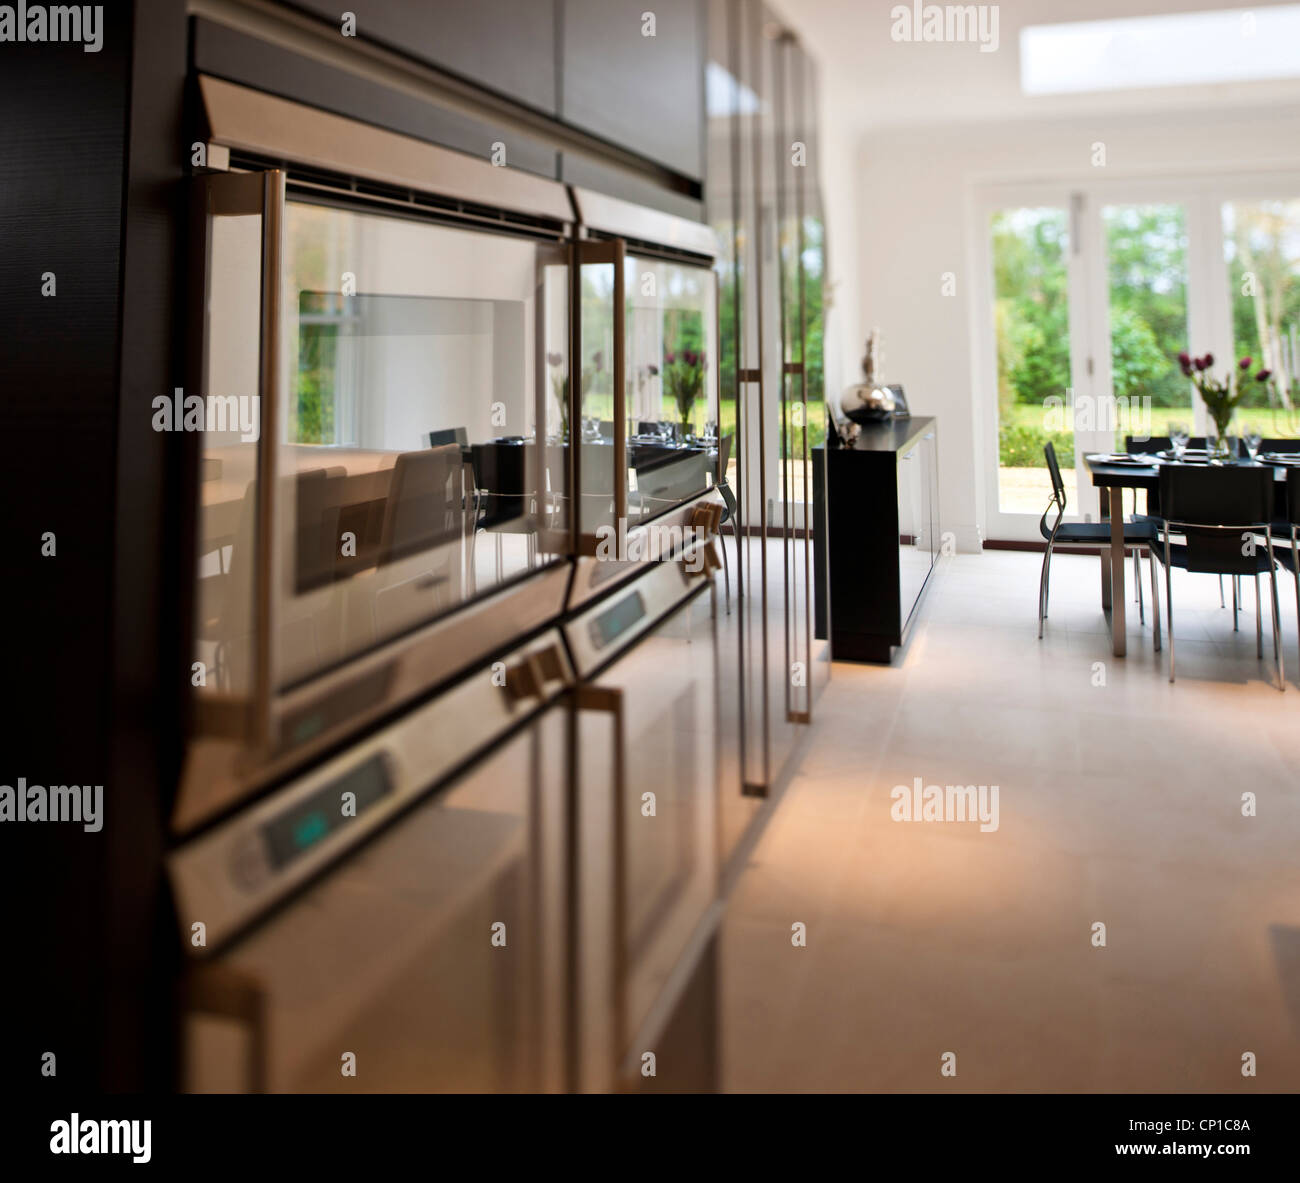 Viste di dettaglio di riflessi nel vetro portelli di forni in uno stile minimalista cucina/sala da pranzo Foto Stock